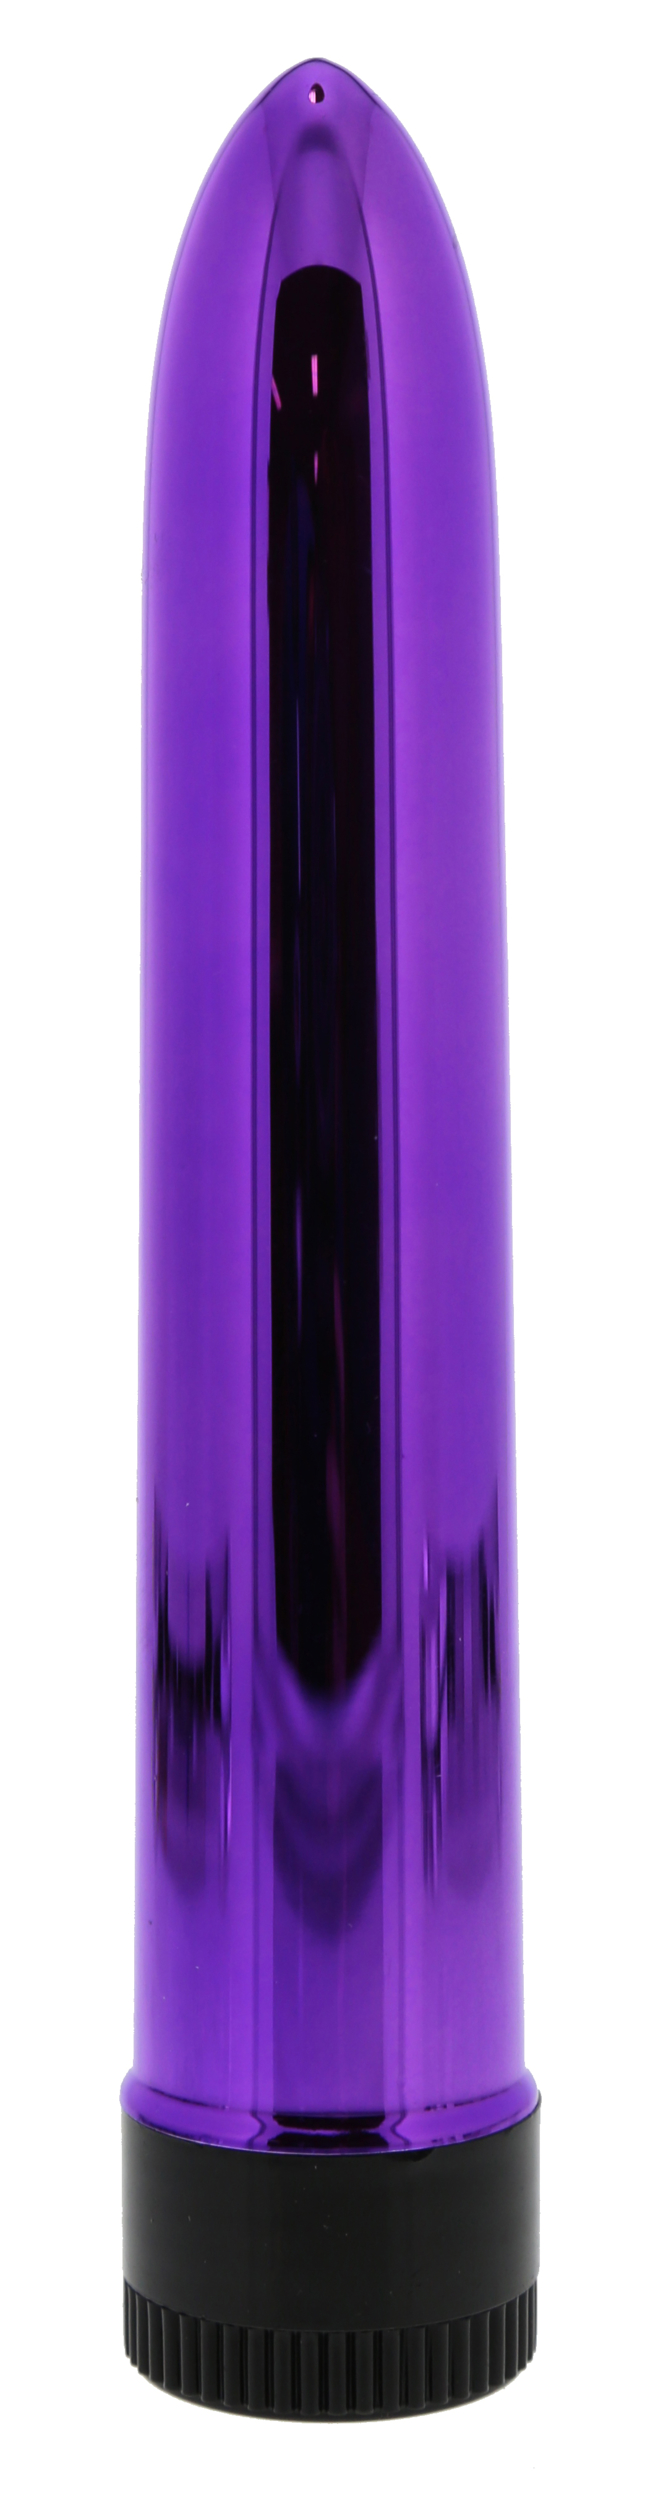 vibro-krypton-violet-1